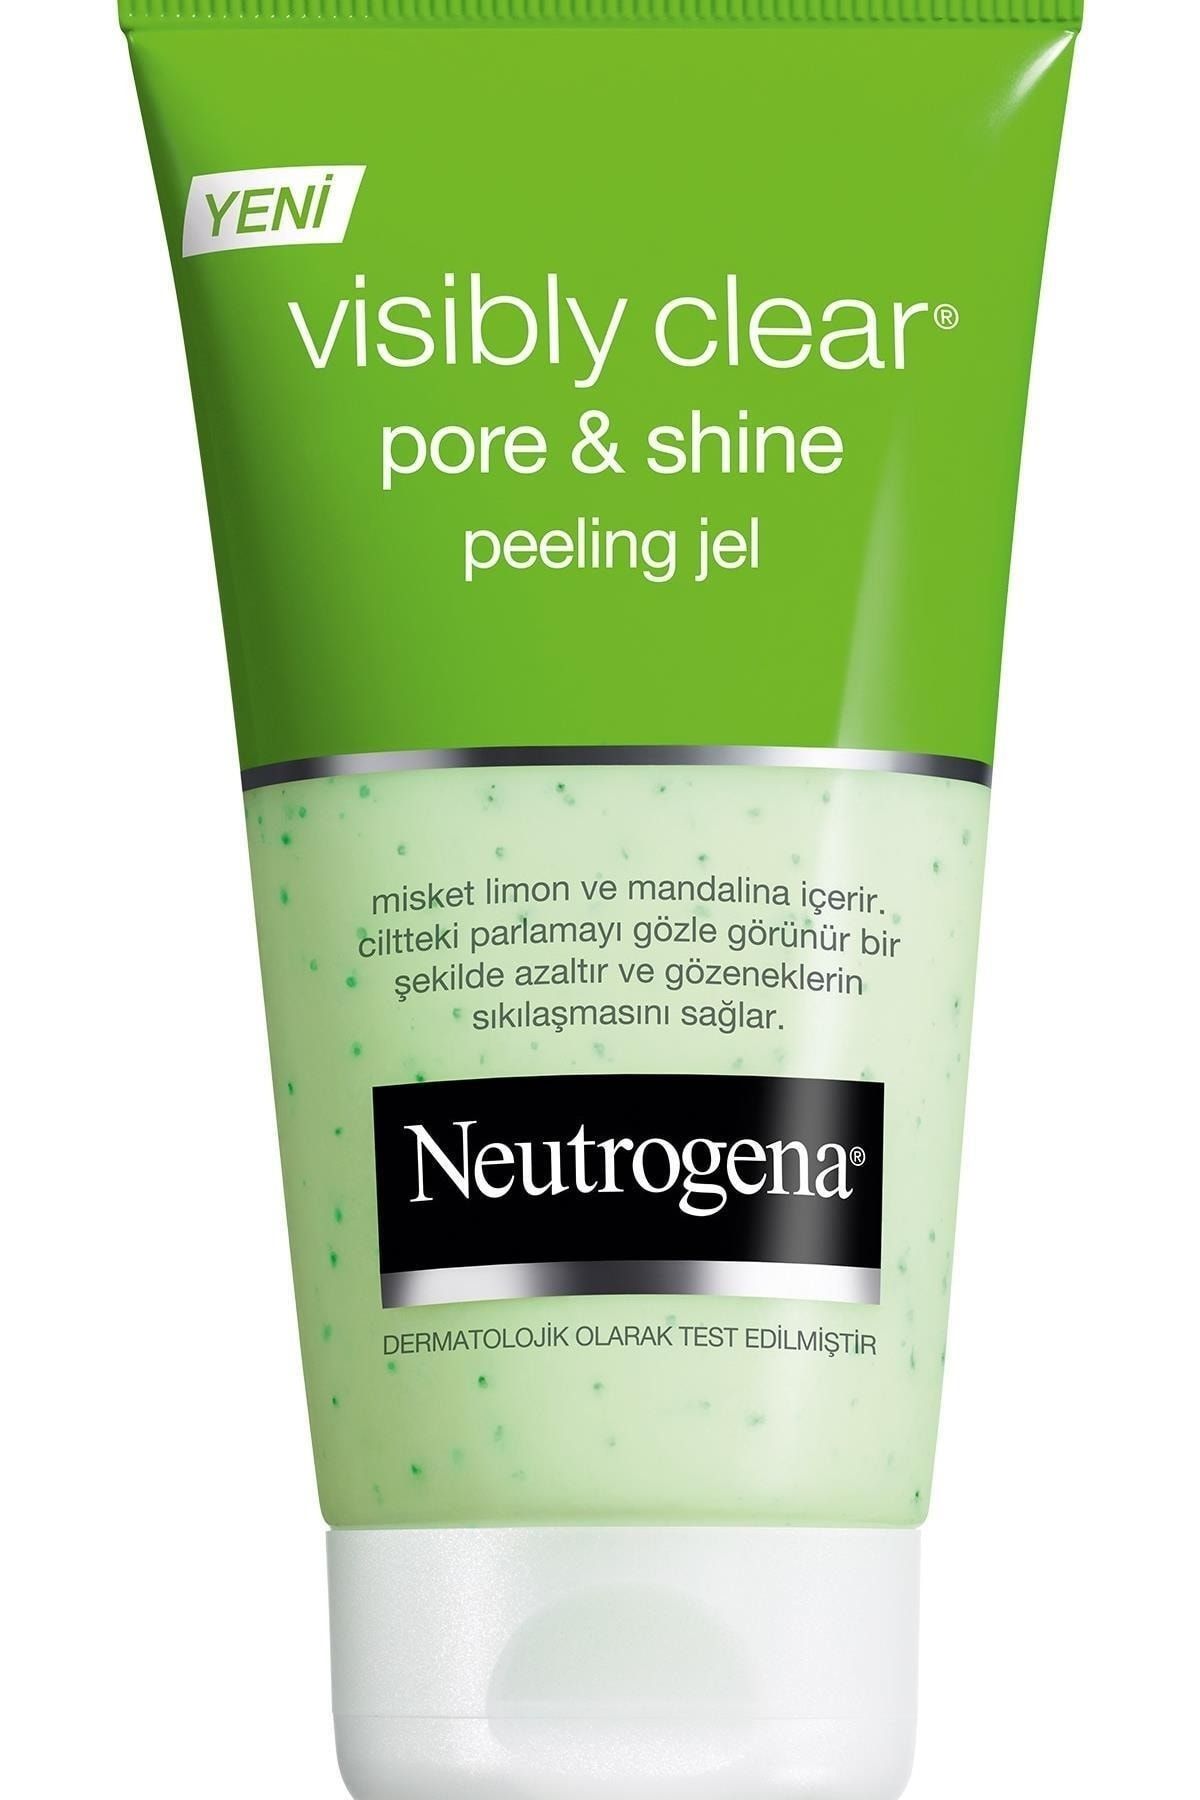 Neutrogena Visibly Clear Pore & Shine Peeling Jel 150 Ml - Misket Limonu Ve Mandalina